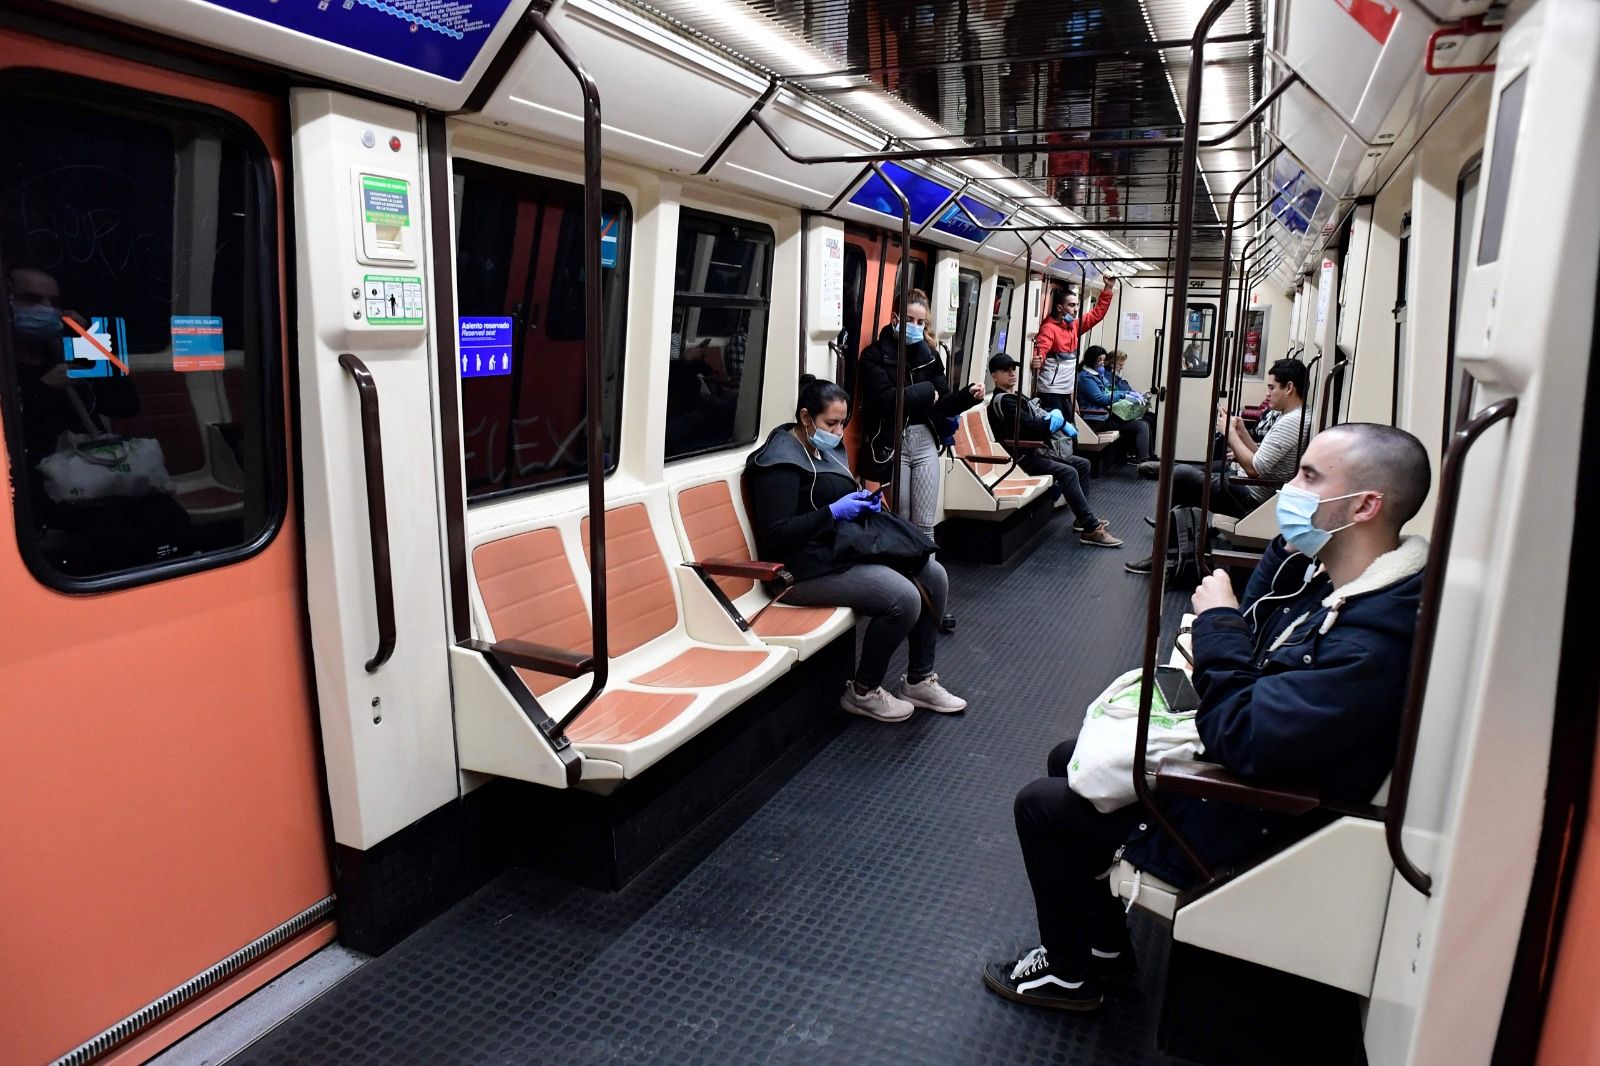 Un vagón del metro de madrid durante la jornada en la que se ha reanudado el trabajo en algunos sectores no esenciales. Ha habido poca ocupación.